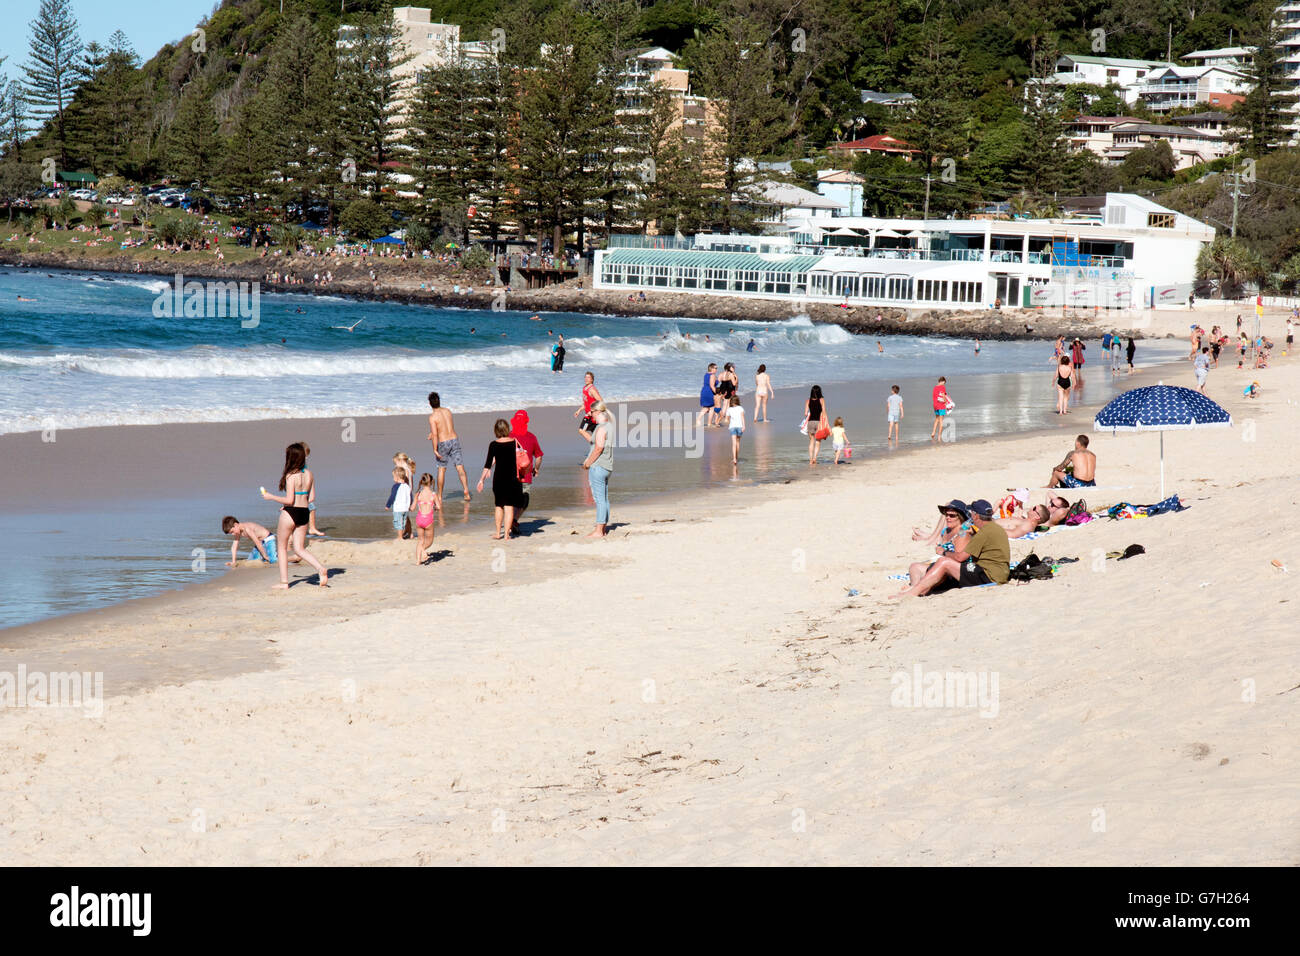 La plage de Burleigh Heads dans la région de Gold Coast de l'Australie Banque D'Images